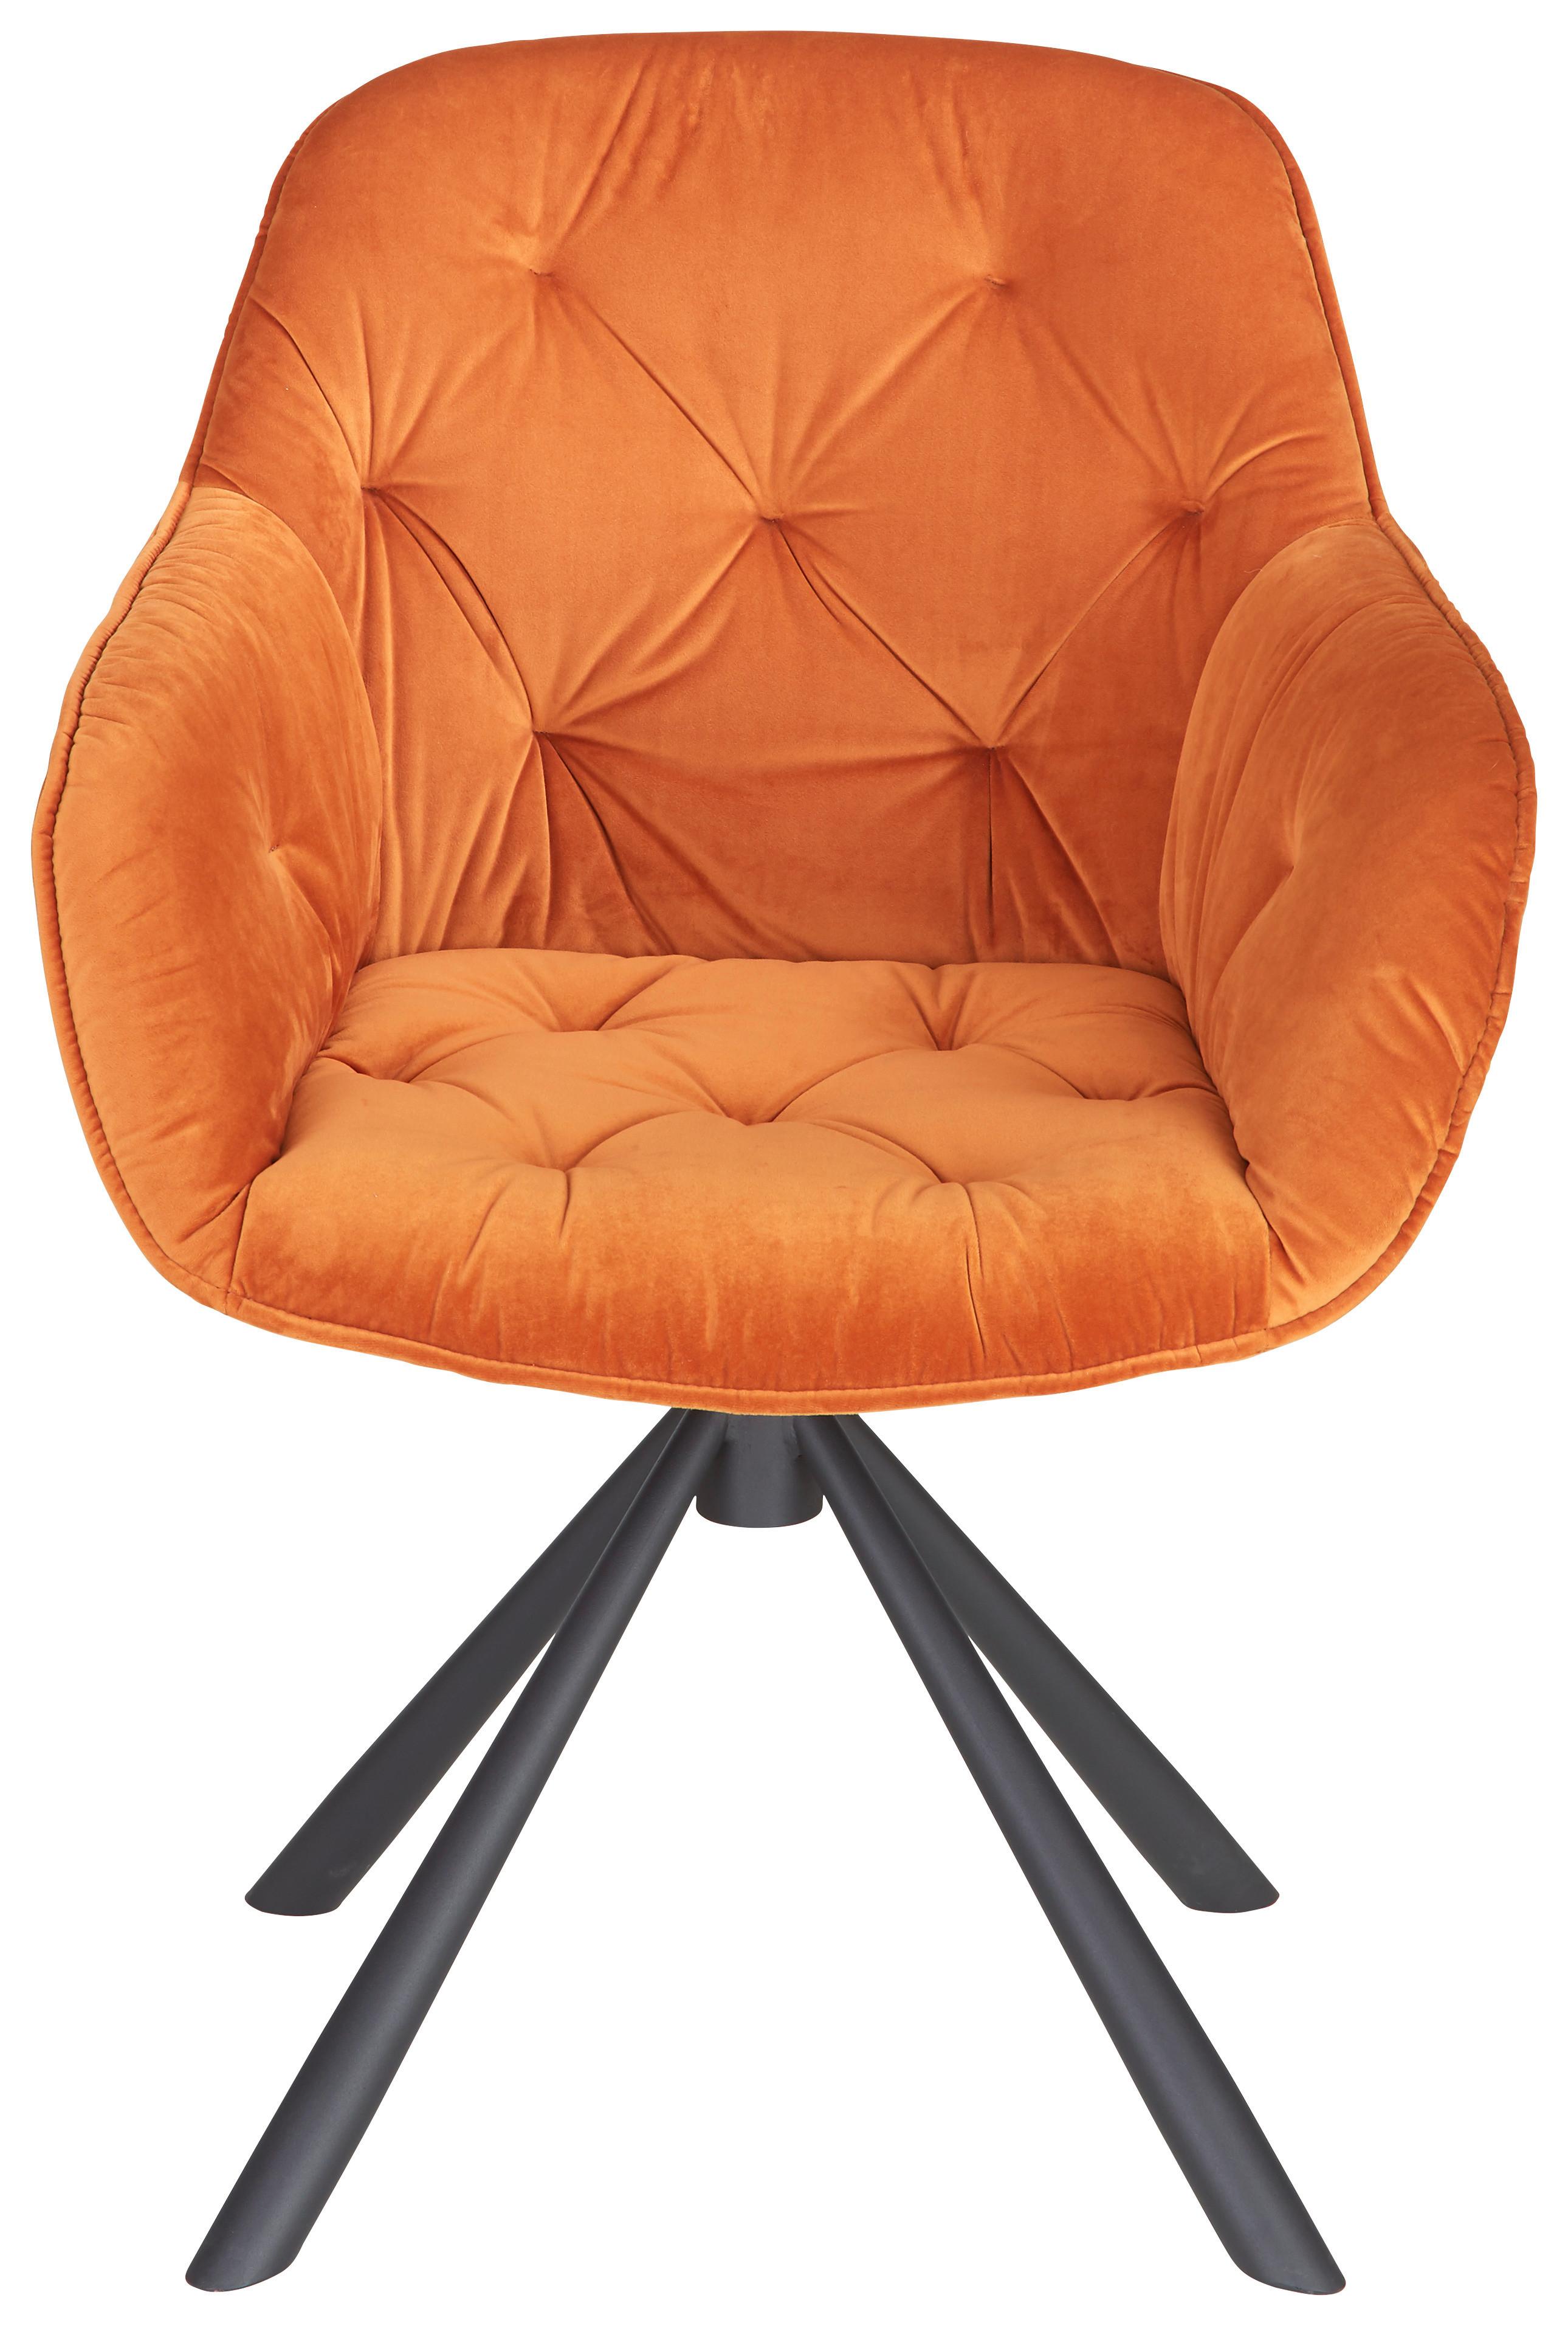 Židle Eileen Oranžová - oranžová/černá, Lifestyle, kov/textil (63/86/66cm) - Premium Living